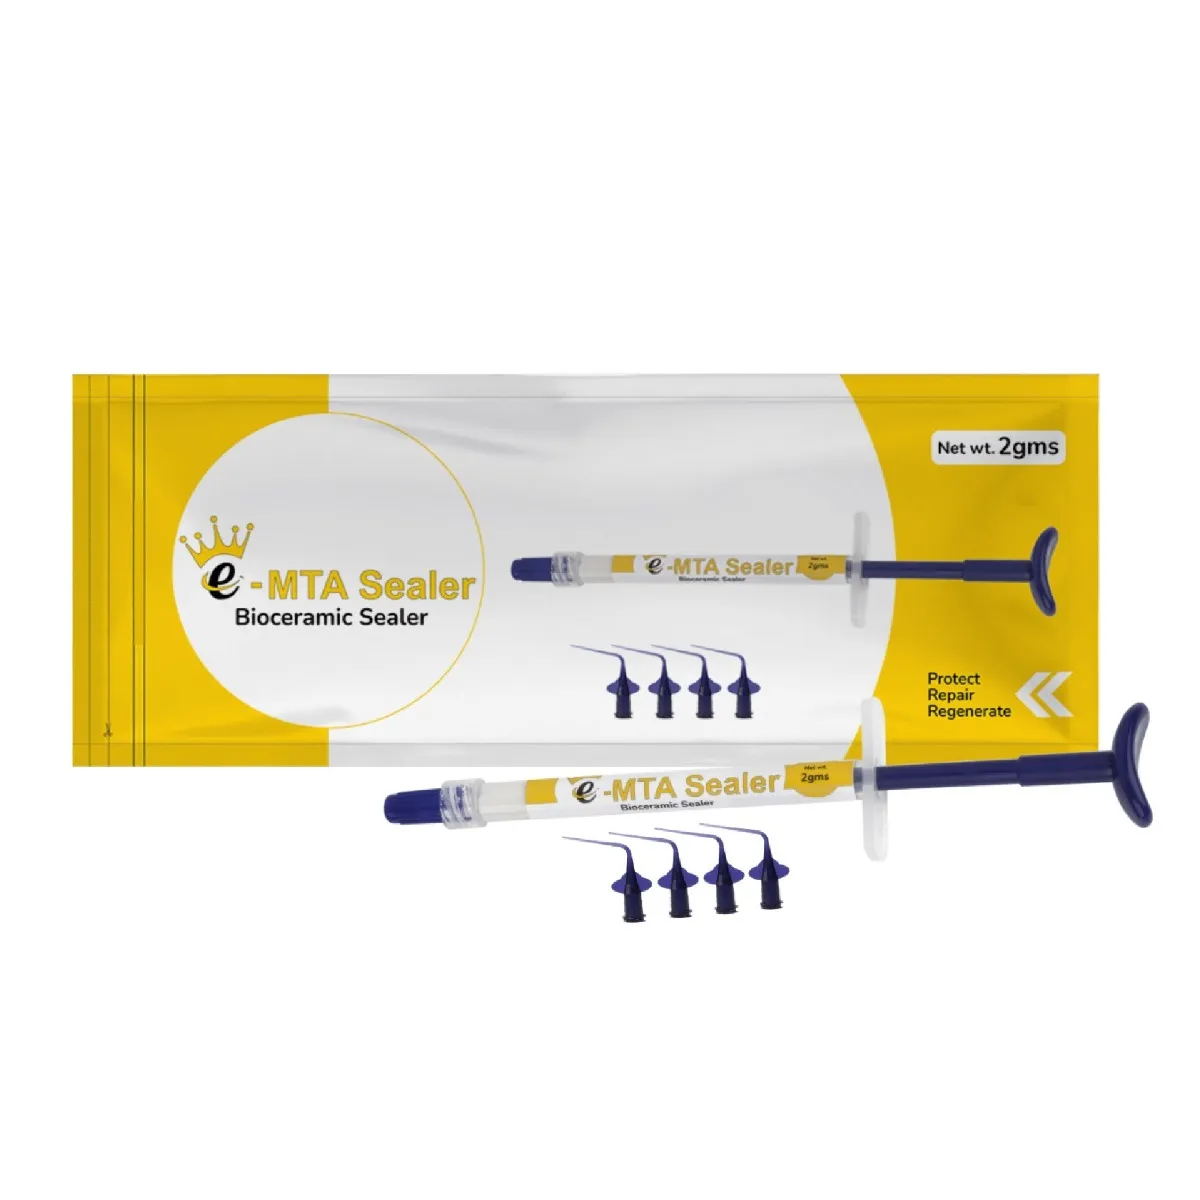 E-MTA Sealer (02 Gms) Bioceramic Sealer